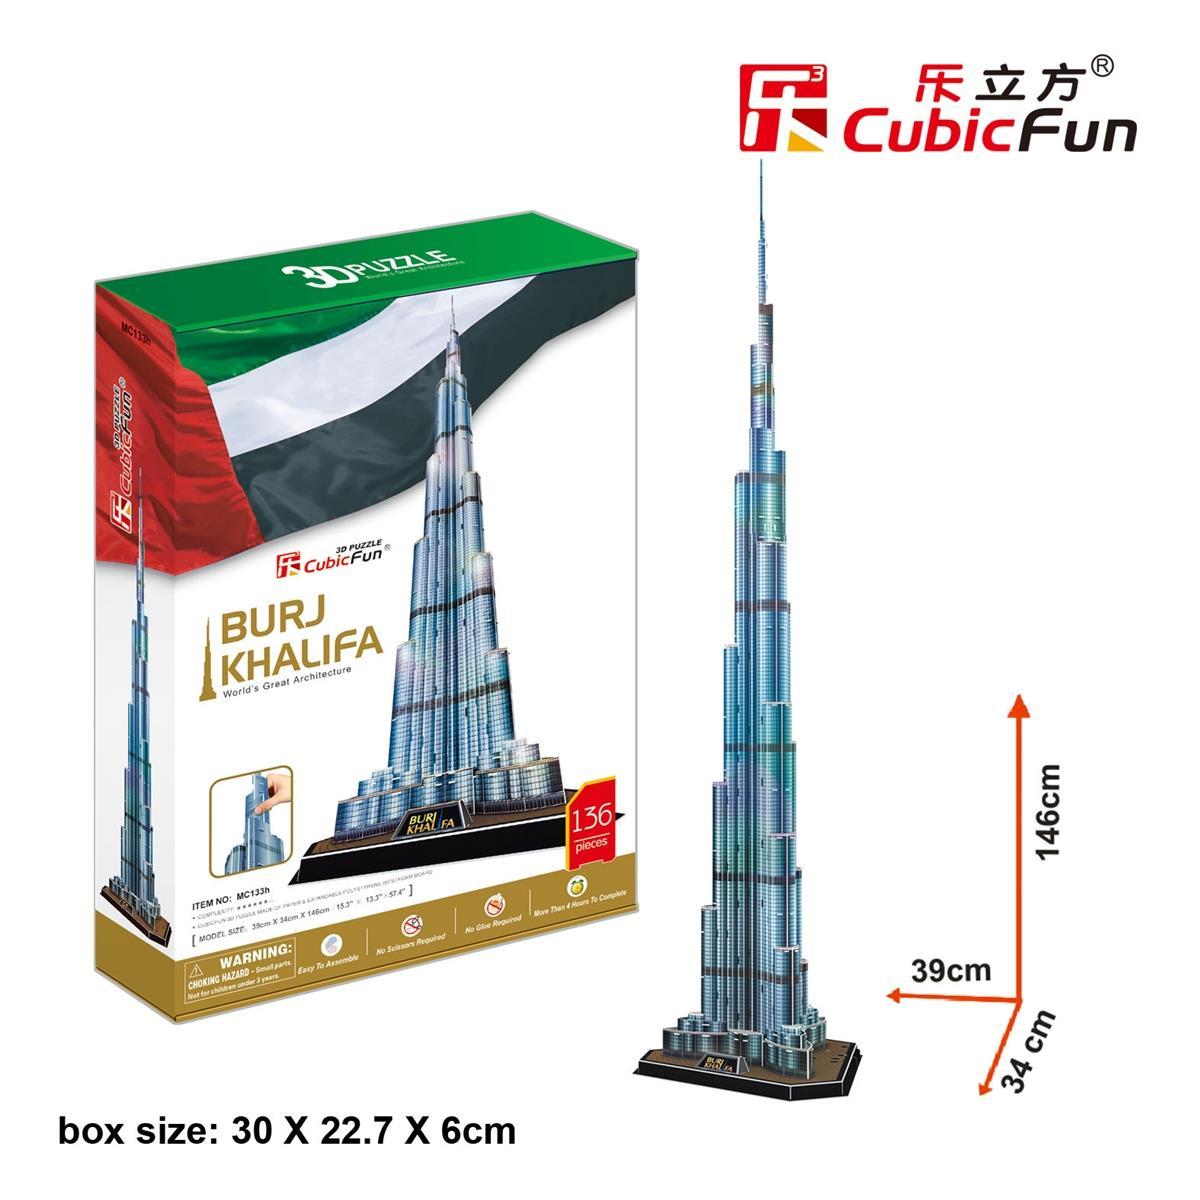 Cubic Fun Burj Halife Binası - Dubai